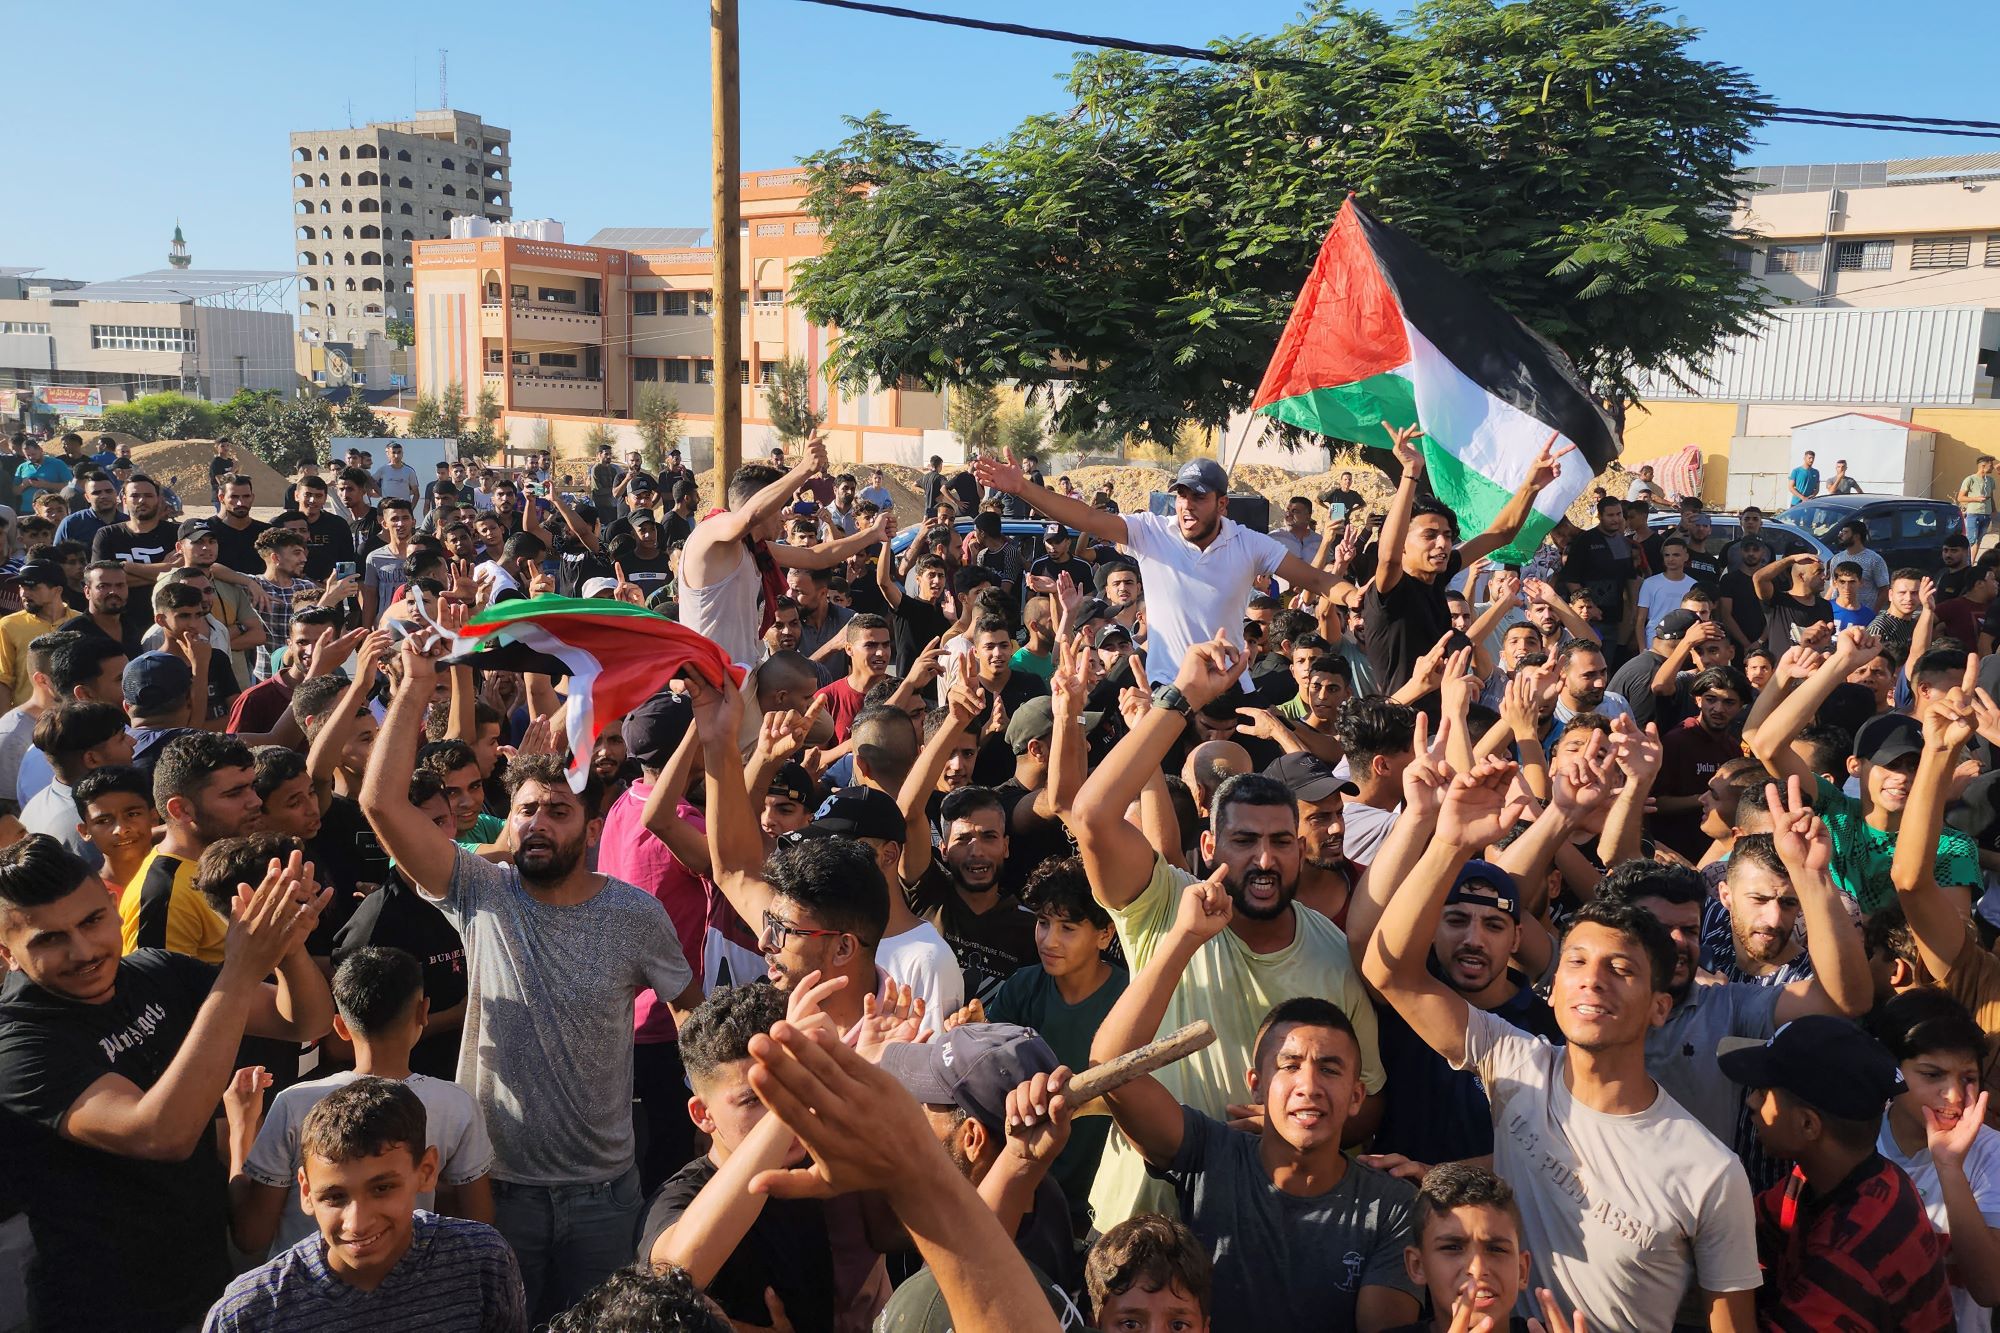 Μεσανατολικό: Οι Παλαιστίνιοι ηγέτες συμφώνησαν να συγκροτήσουν μια επιτροπή που «θα βάλει τέλος στον διχασμό»